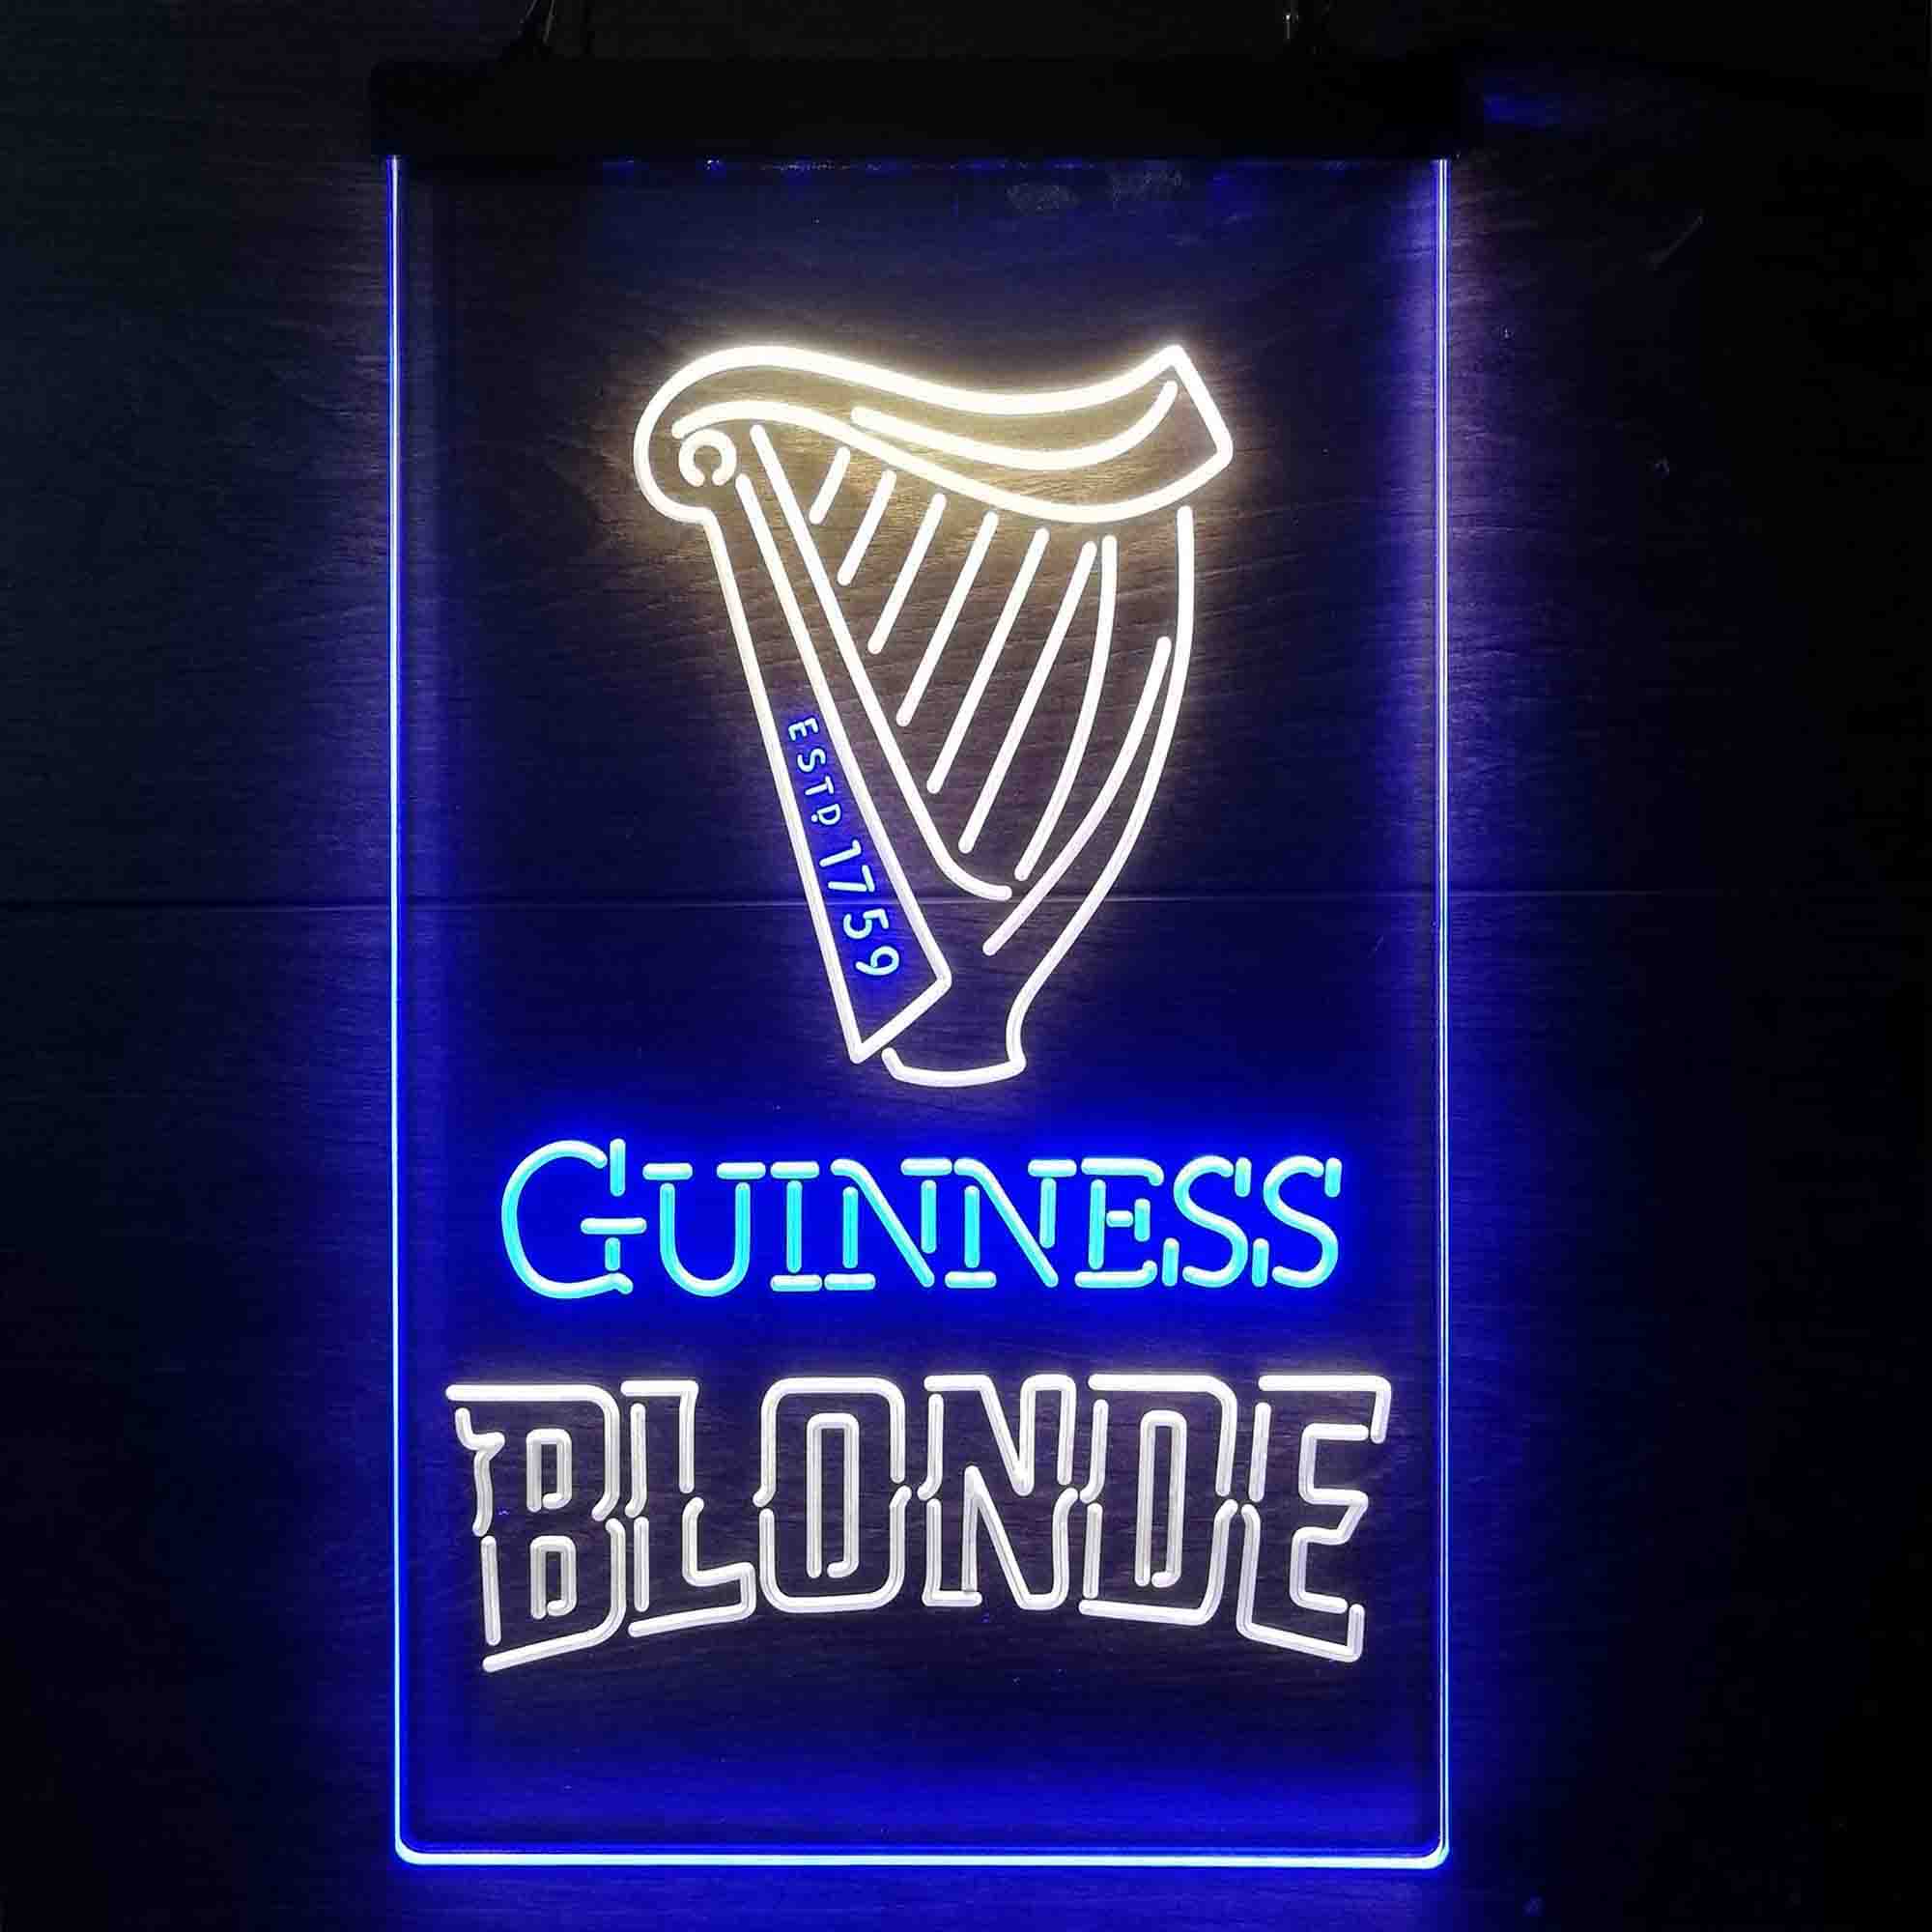 Guinness Blonde Golden Beer Neon-Like LED Sign